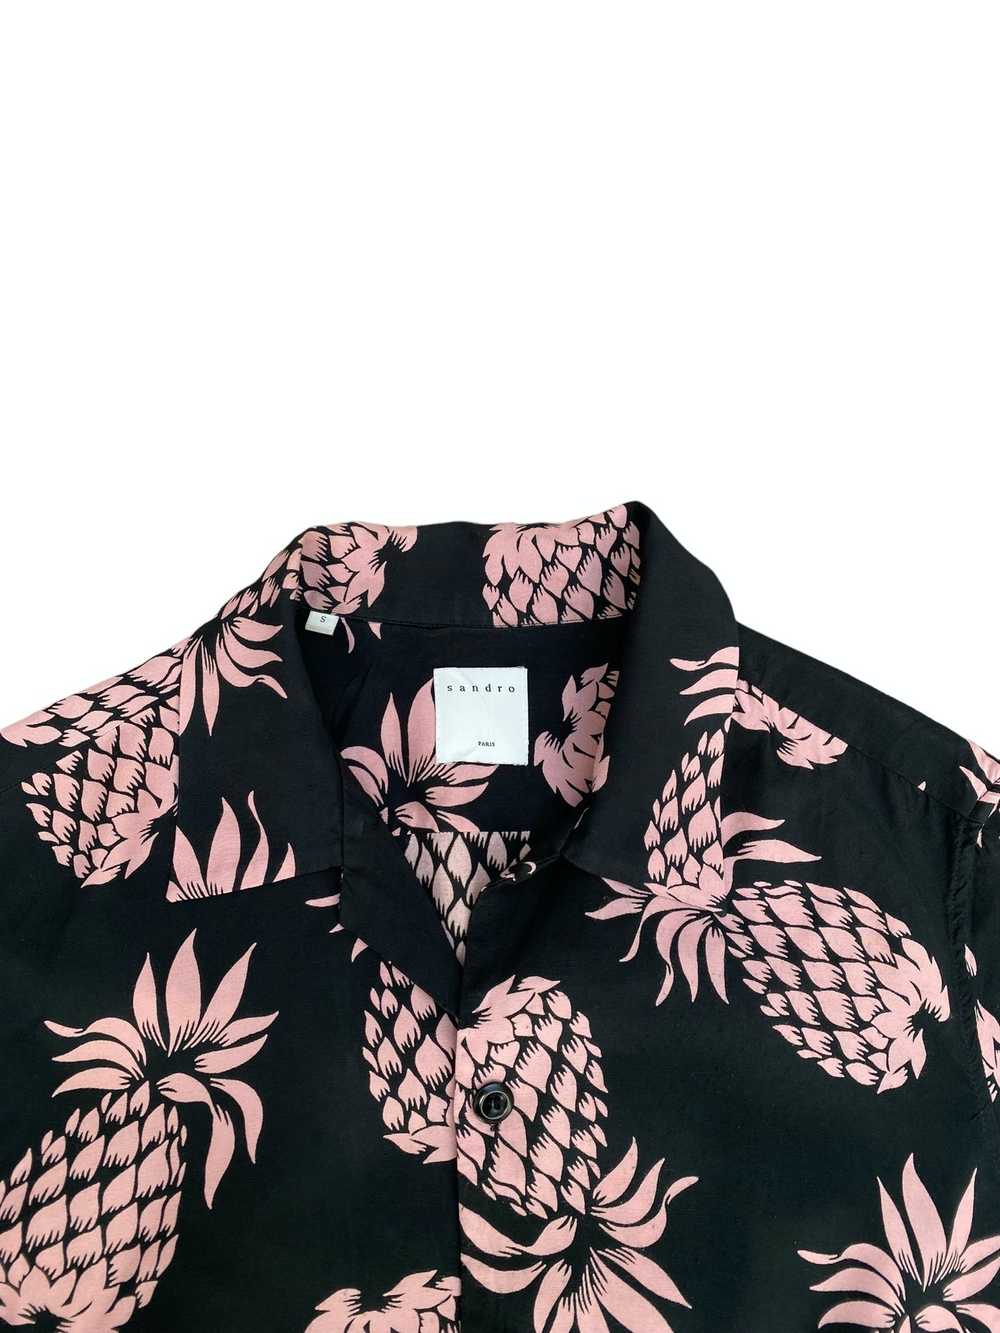 Sandro Black Pink Floral Hawaiian shirt - image 2